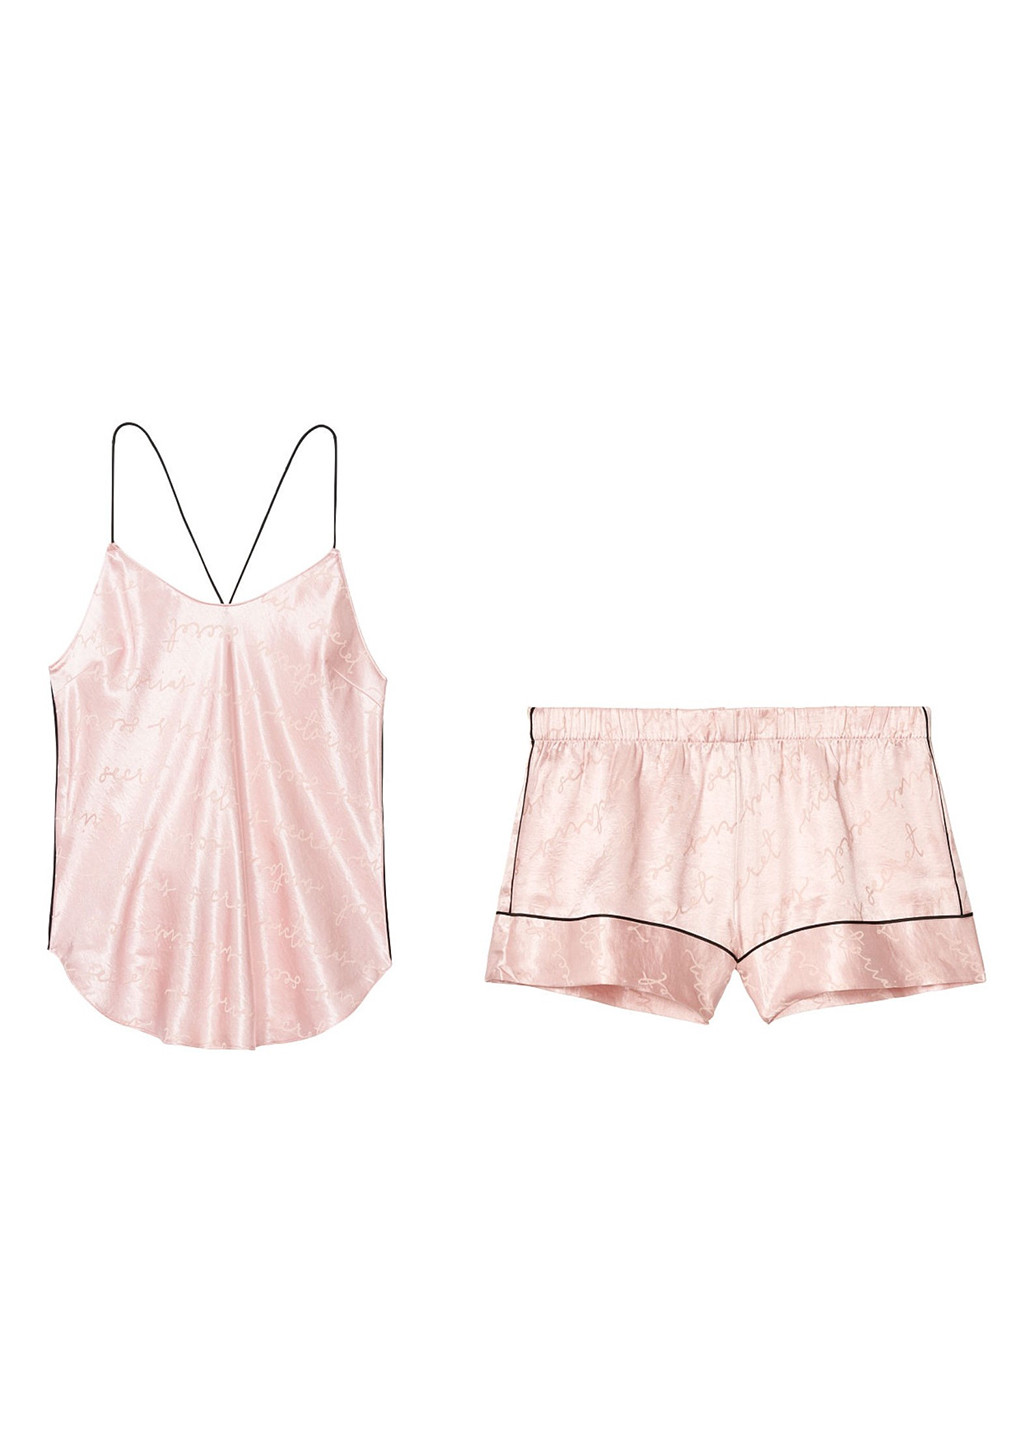 Светло-розовая всесезон пижама (майка, шорты) майка + шорты Victoria's Secret